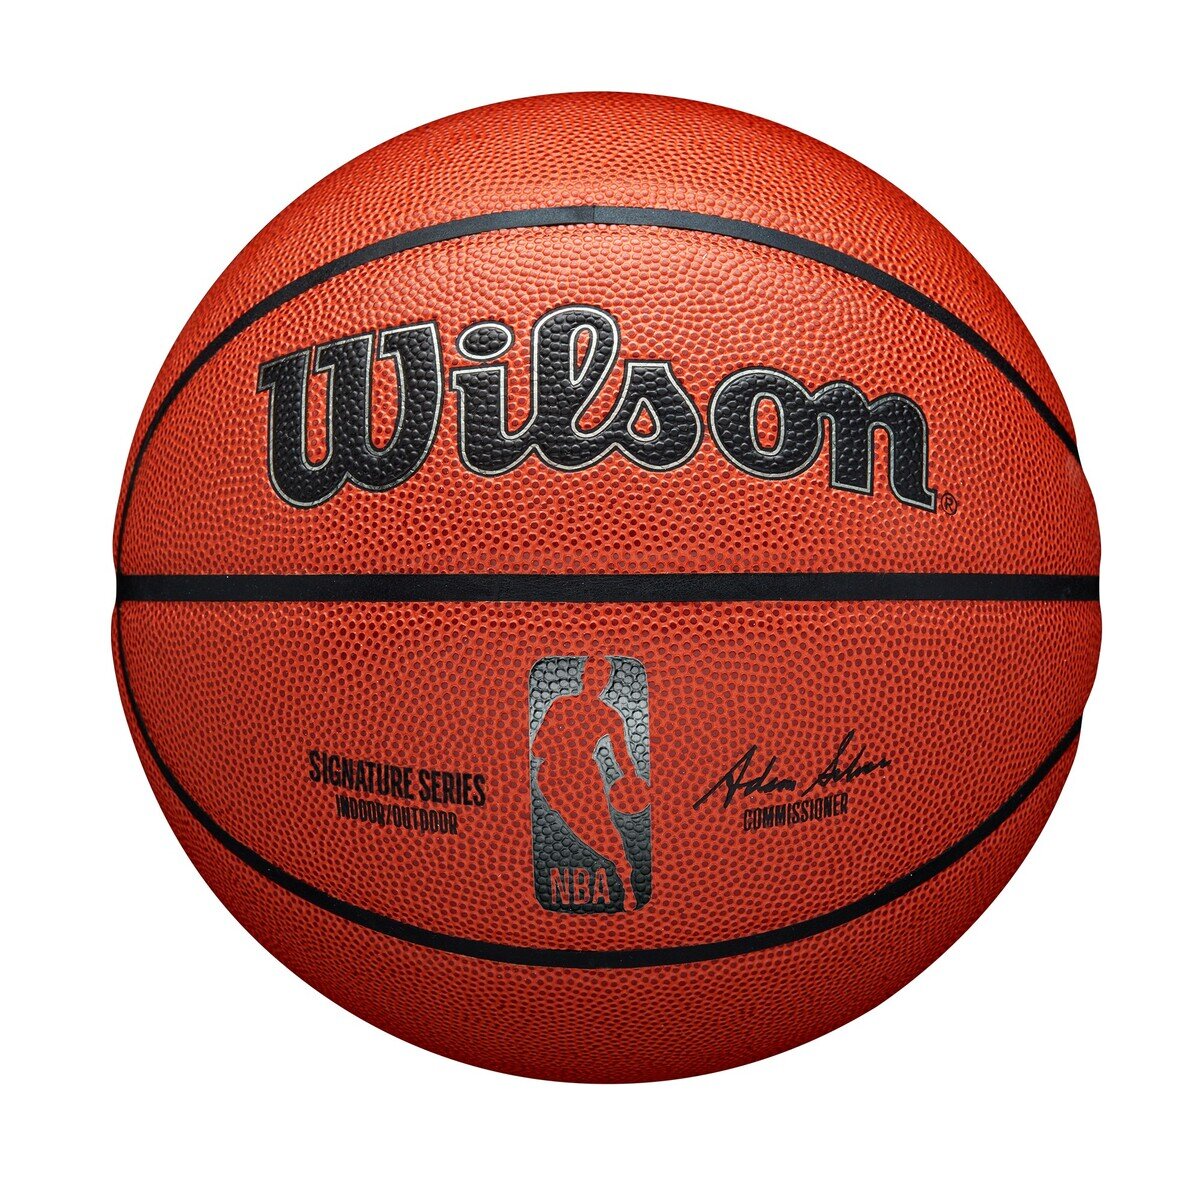 ウィルソン NBA バスケットボール 7号球